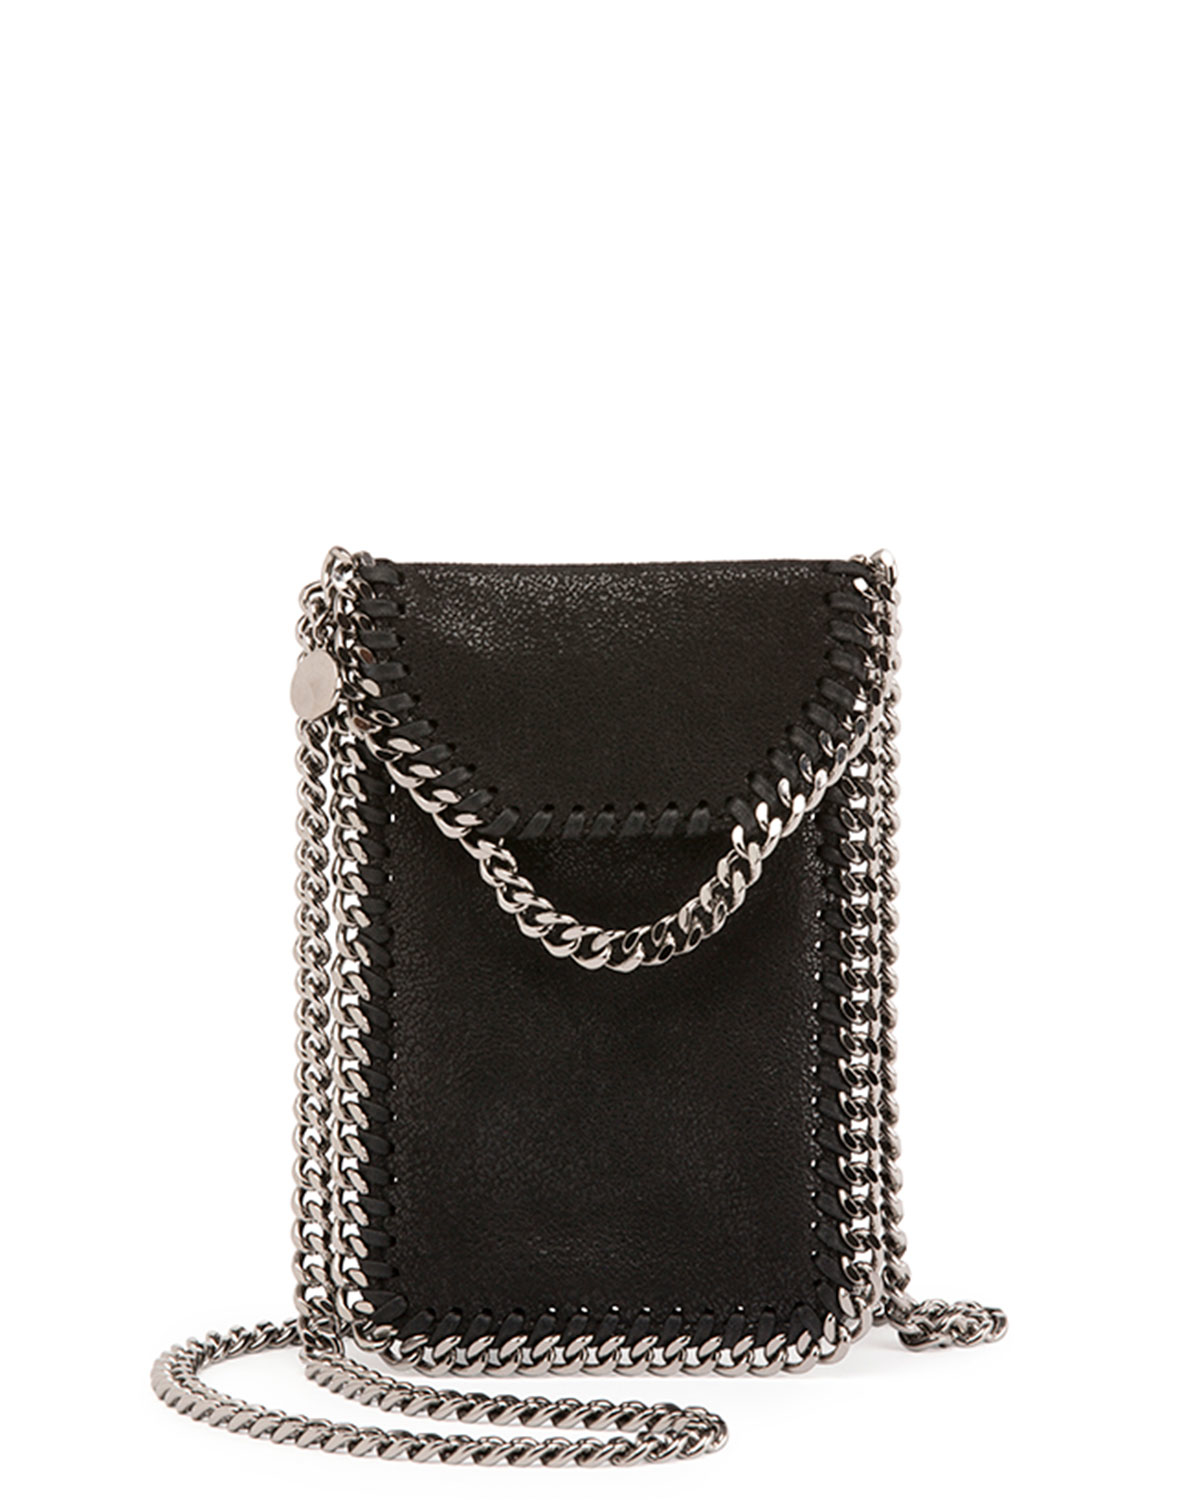 Lyst - Stella Mccartney Crossbody Bag Phone Holder W/chain Trim in Black